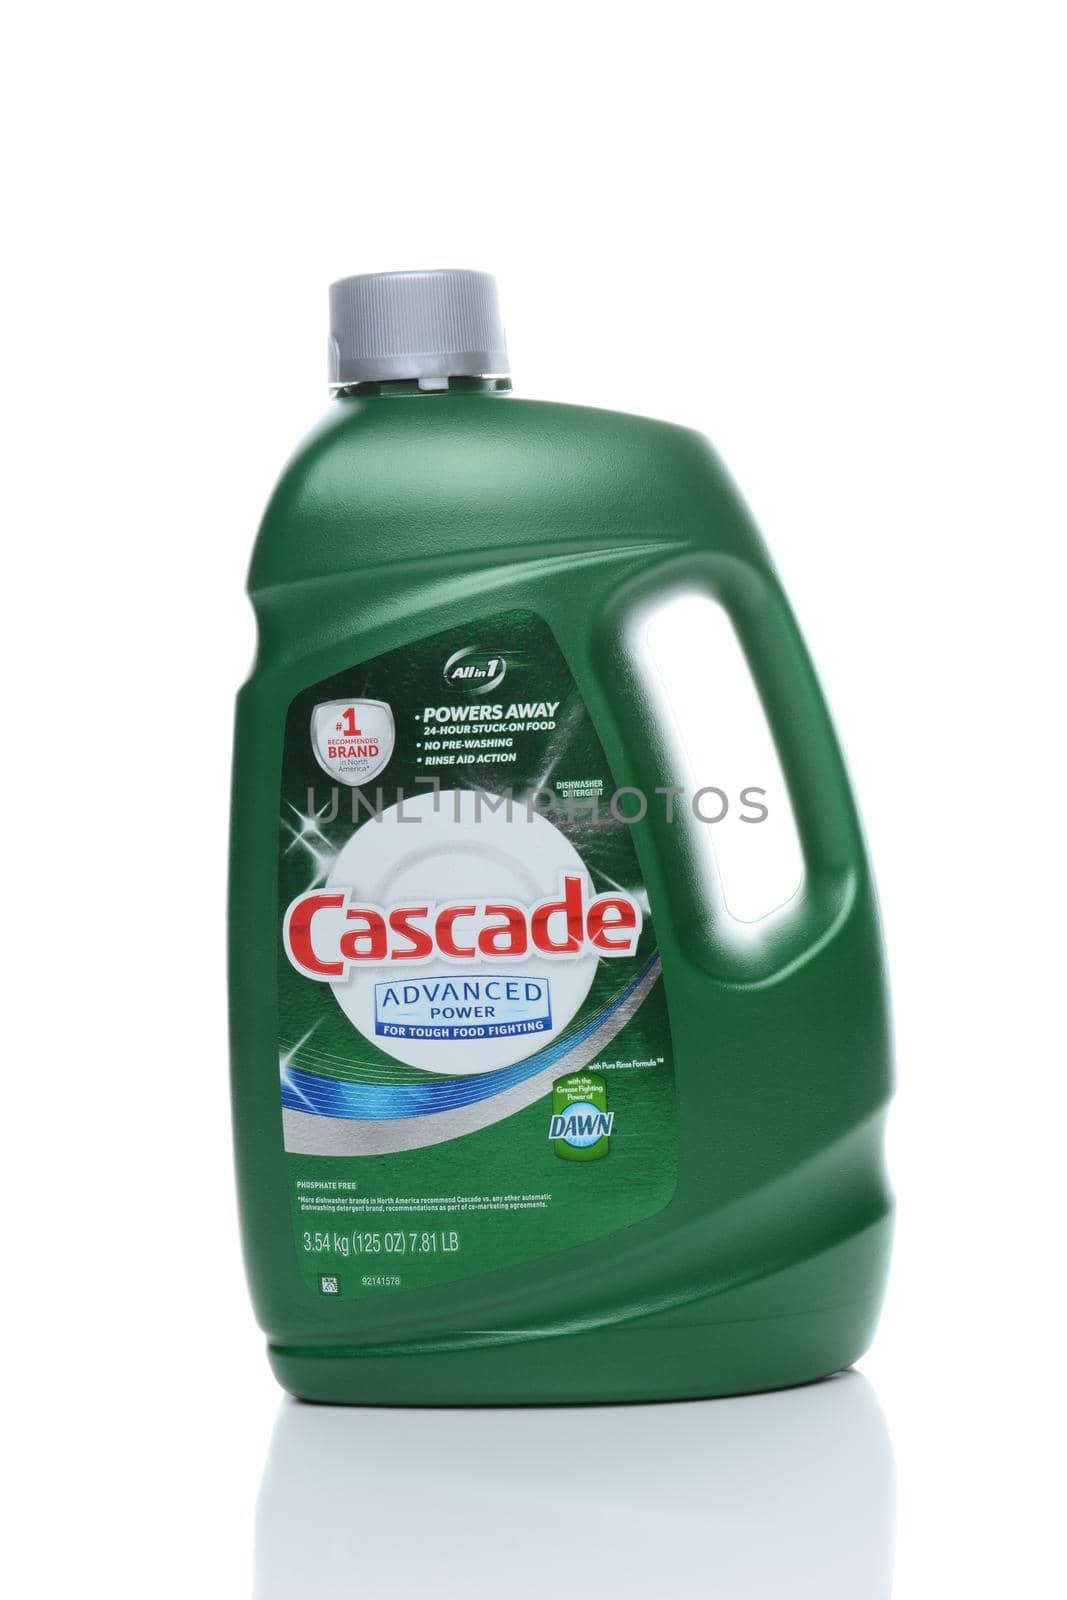 Cascade Dishwasher Detergent by sCukrov